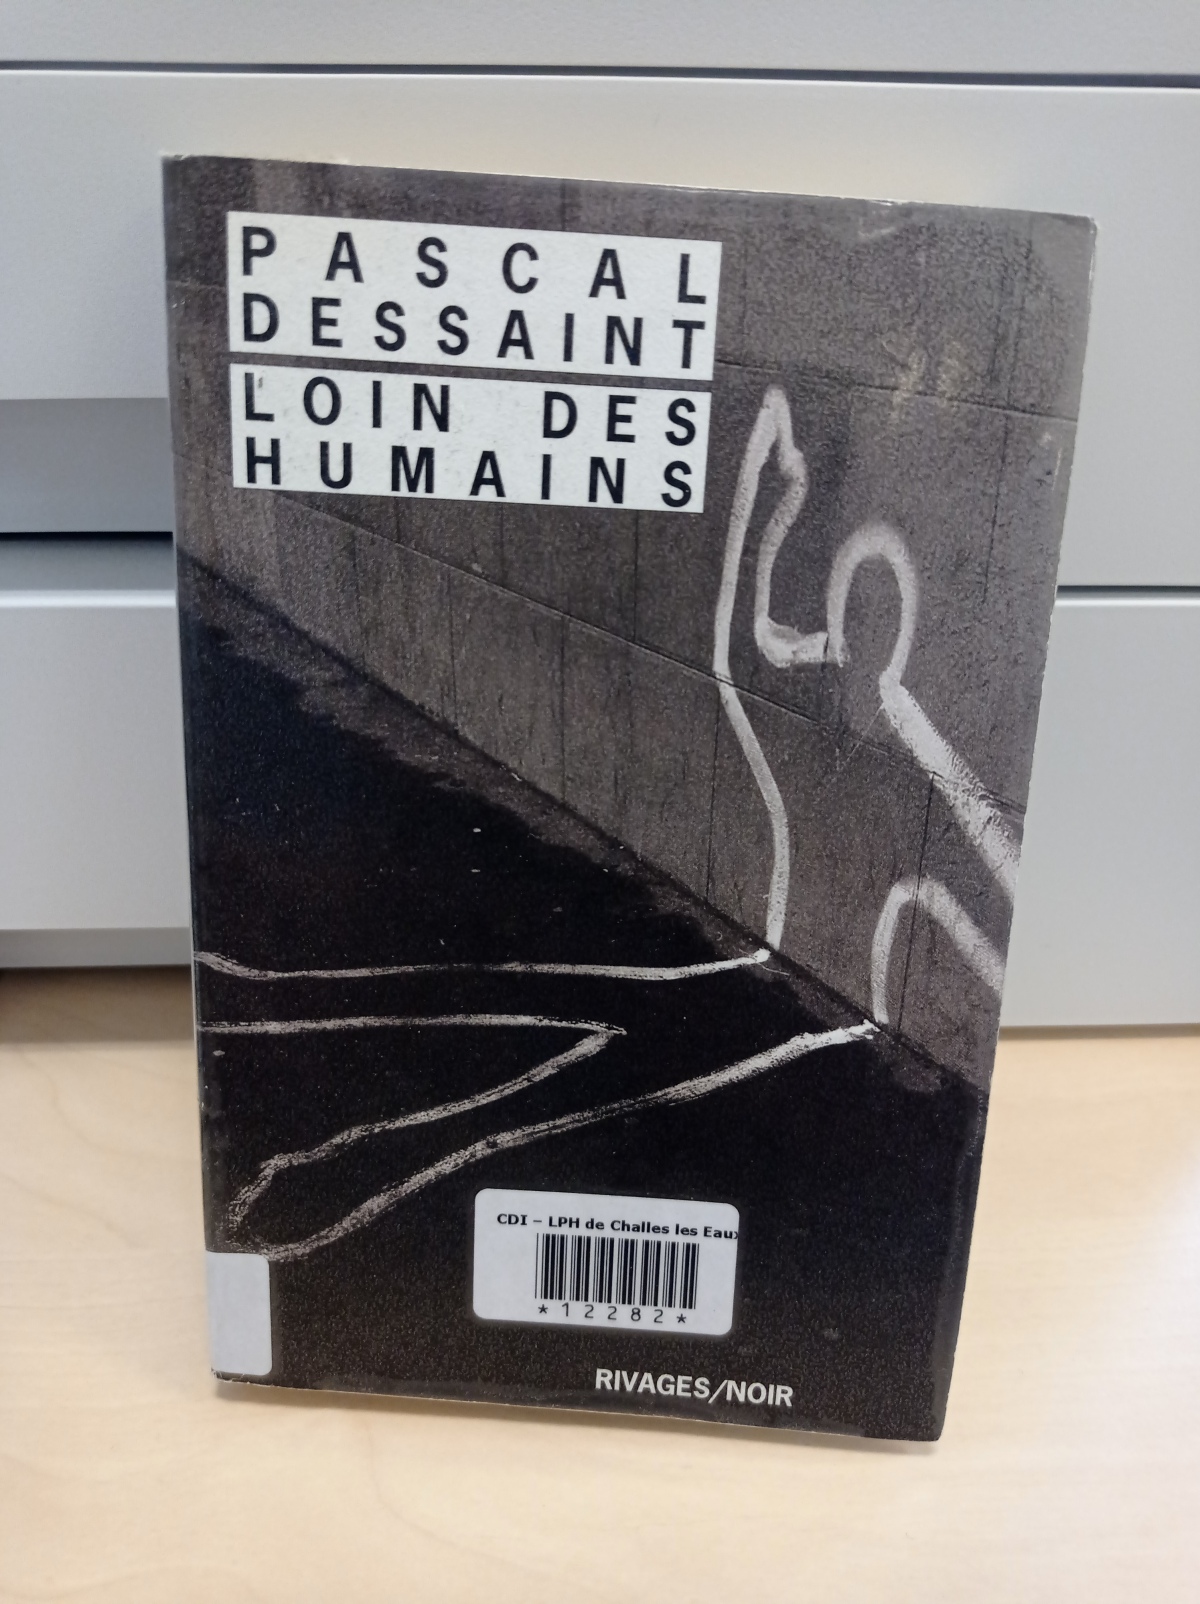 Loin des humains / Pascal Dessaint